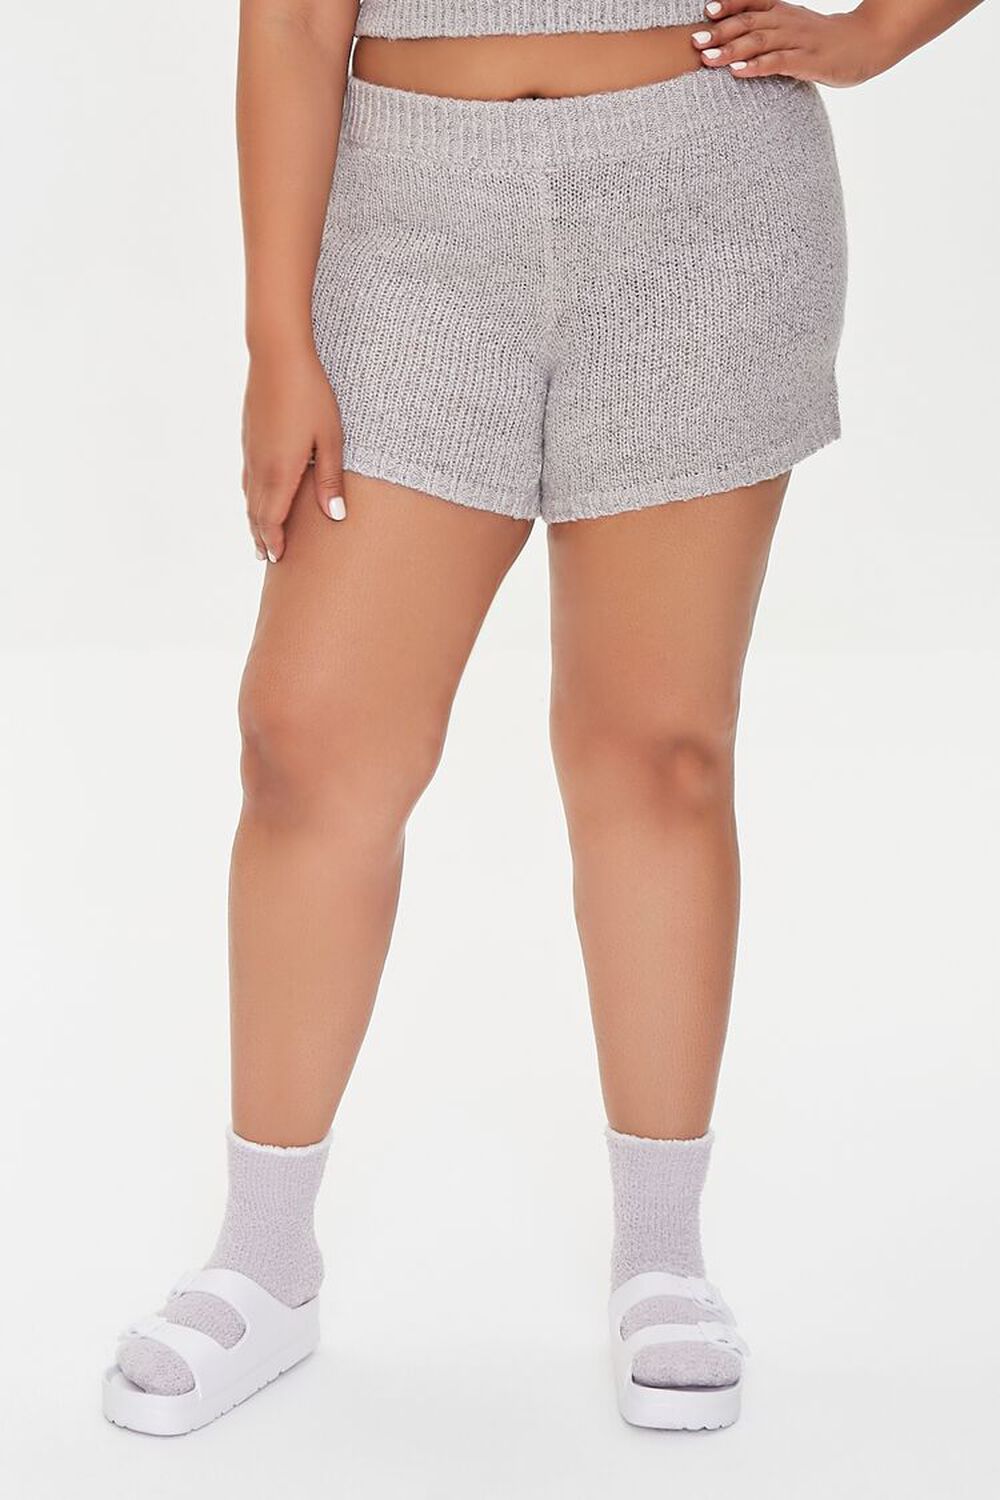 HEATHER GREY Plus Size Sweater-Knit Ribbed Shorts, image 2